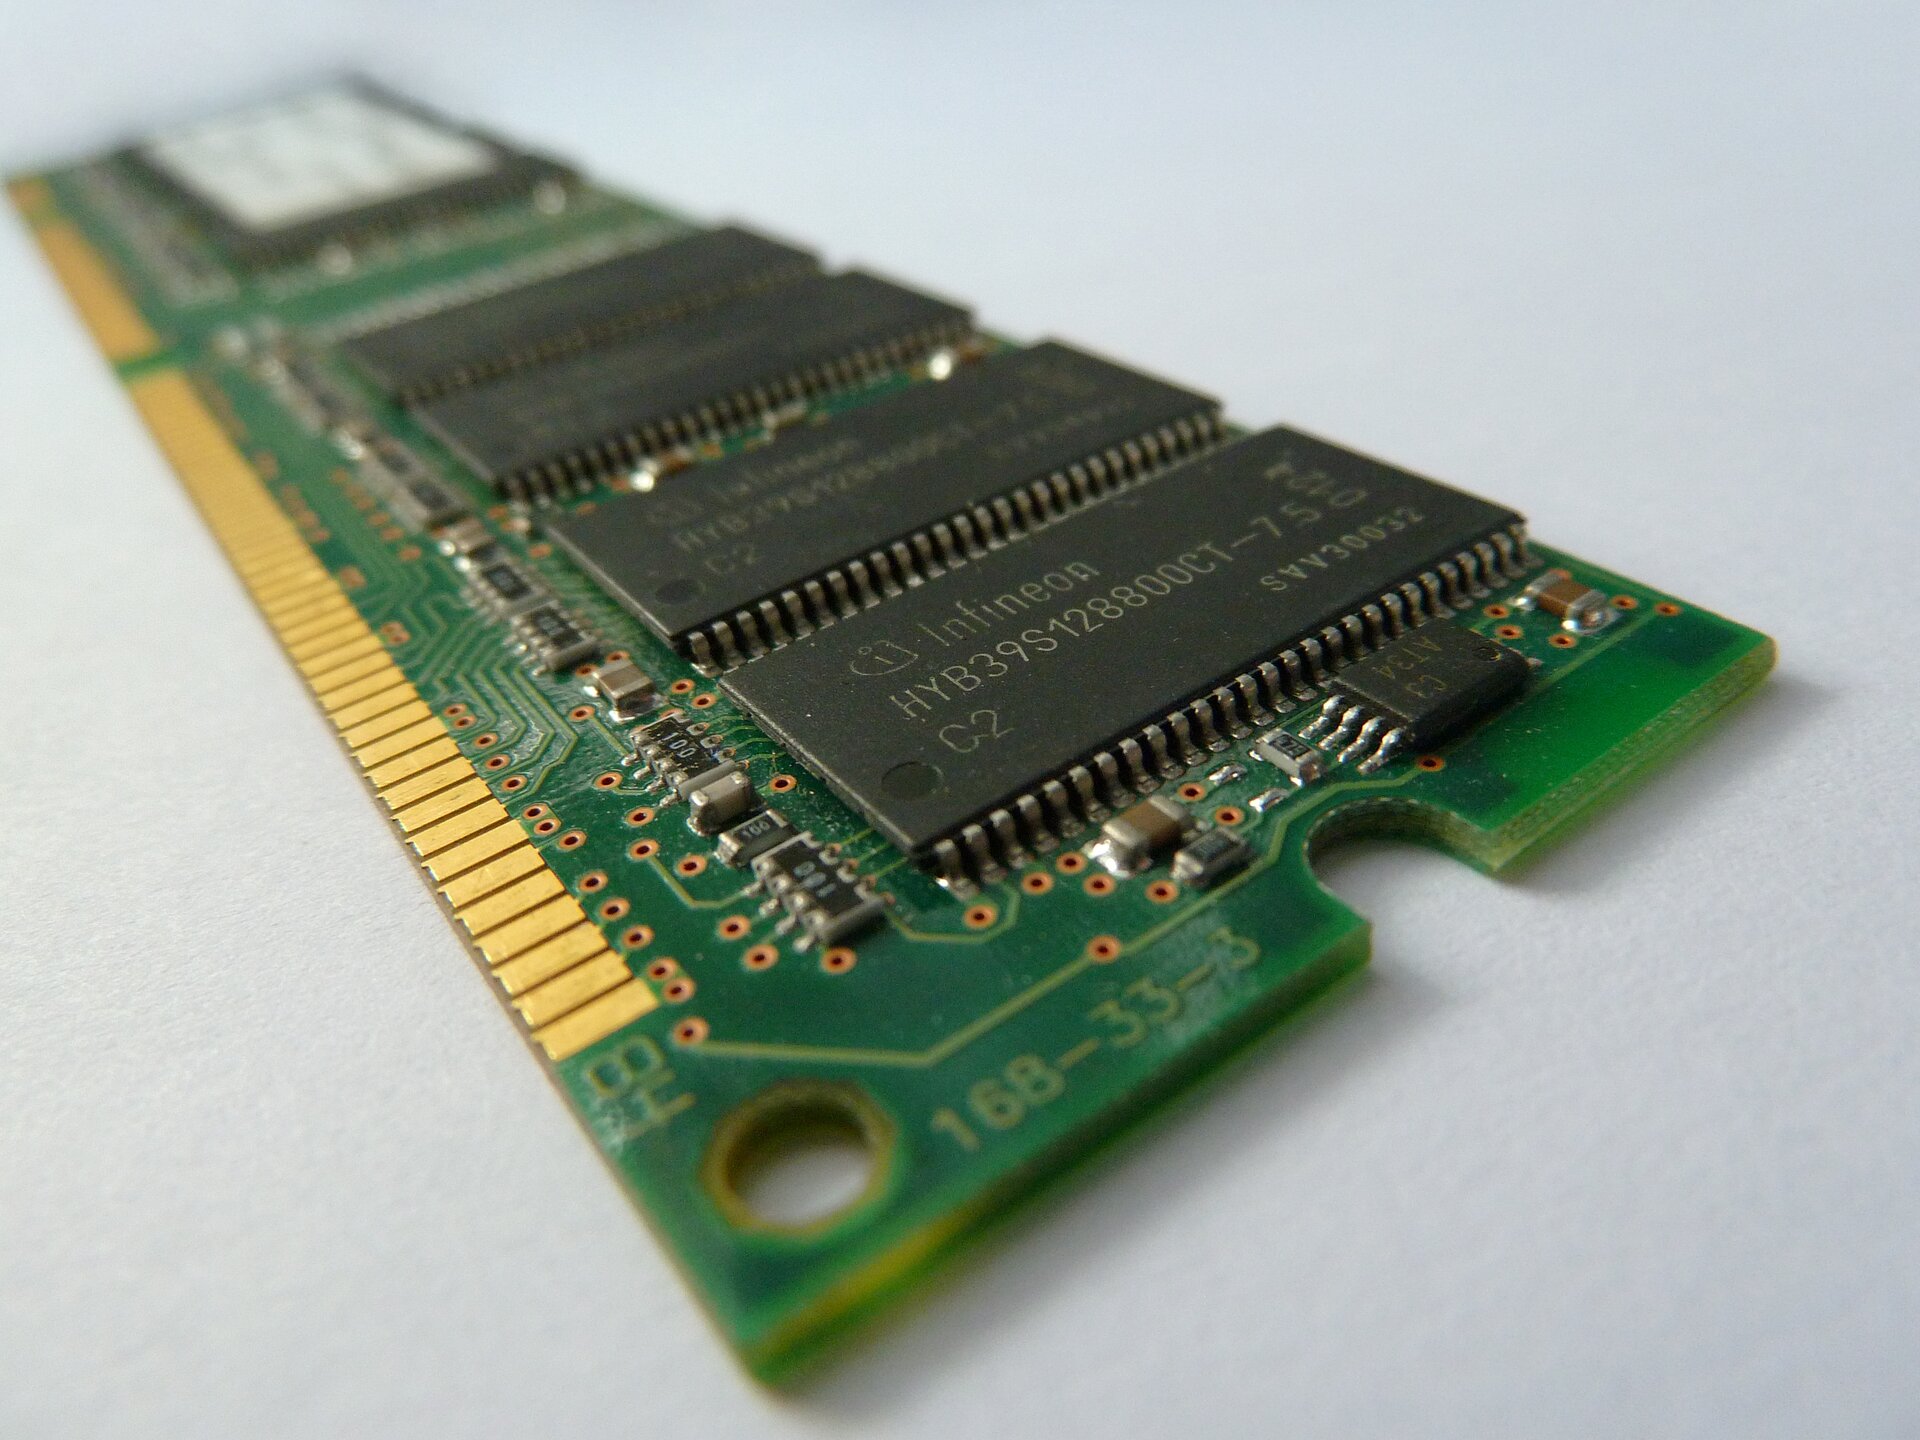 Zdjęcie przedstawia pamięci RAM. Jest to podłużna, prostokątna płytka PCB zawierająca czarne, prostokątne układy pamięci.  Na jej spodzie znajdują się piny służące do komunikacji z innymi podzespołami komputera.